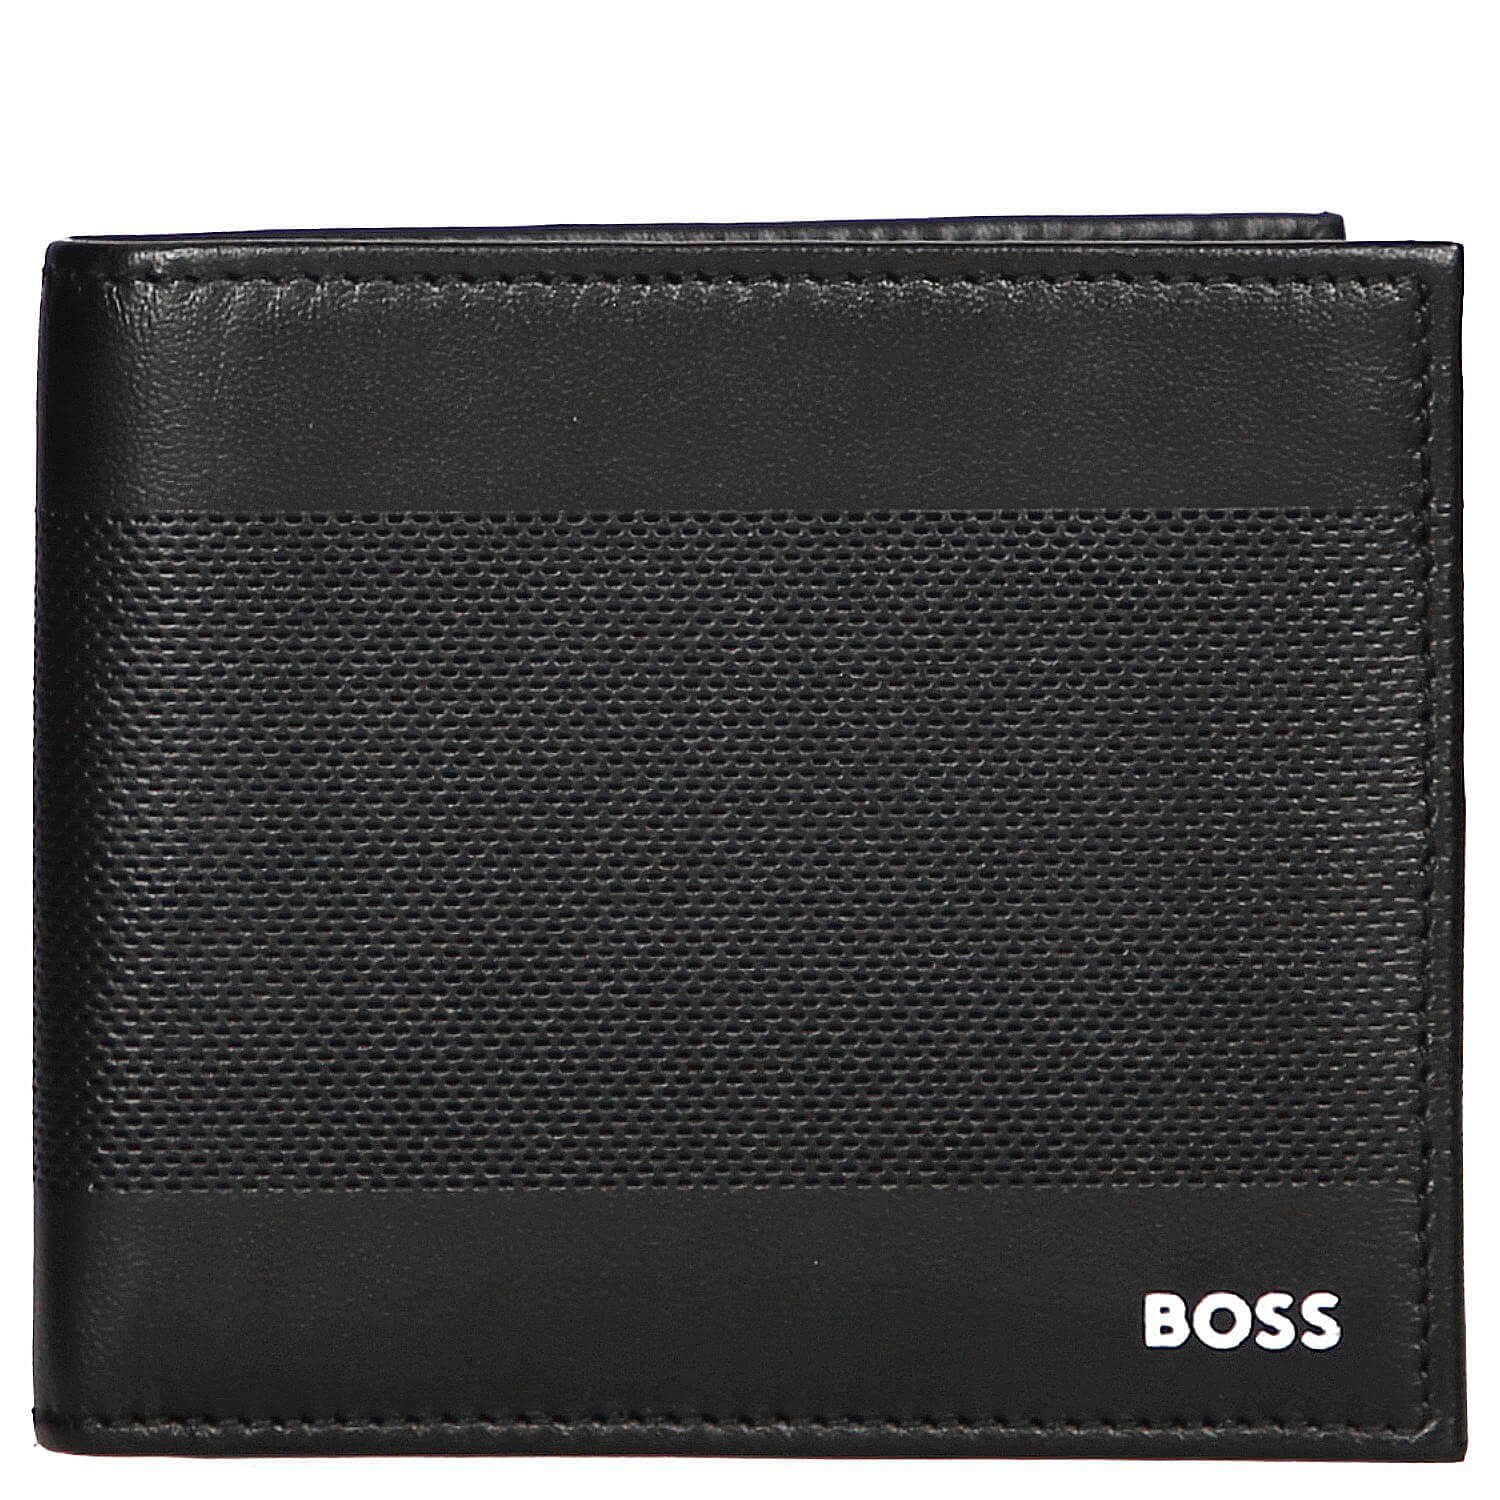 BOSS Herren Brieftaschen online kaufen | OTTO